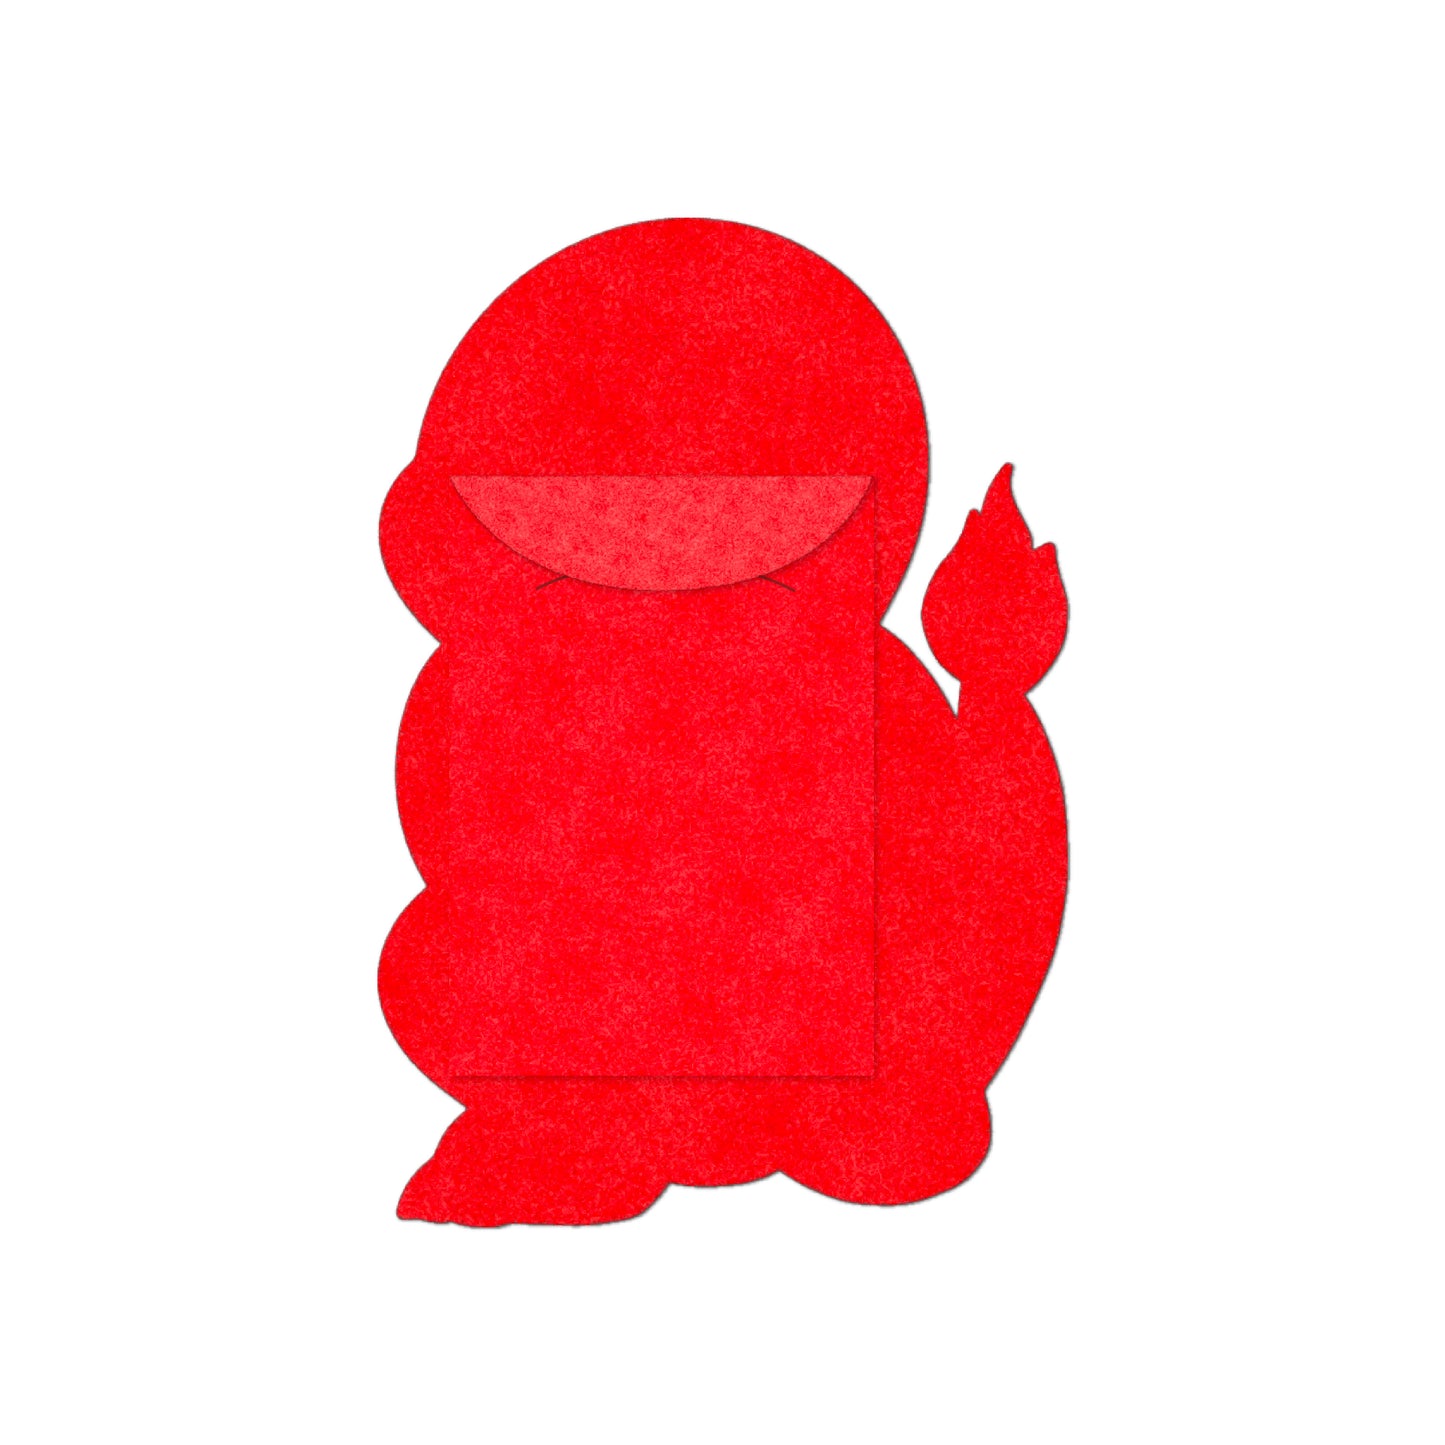 Chunkemon Charmander Red Envelope